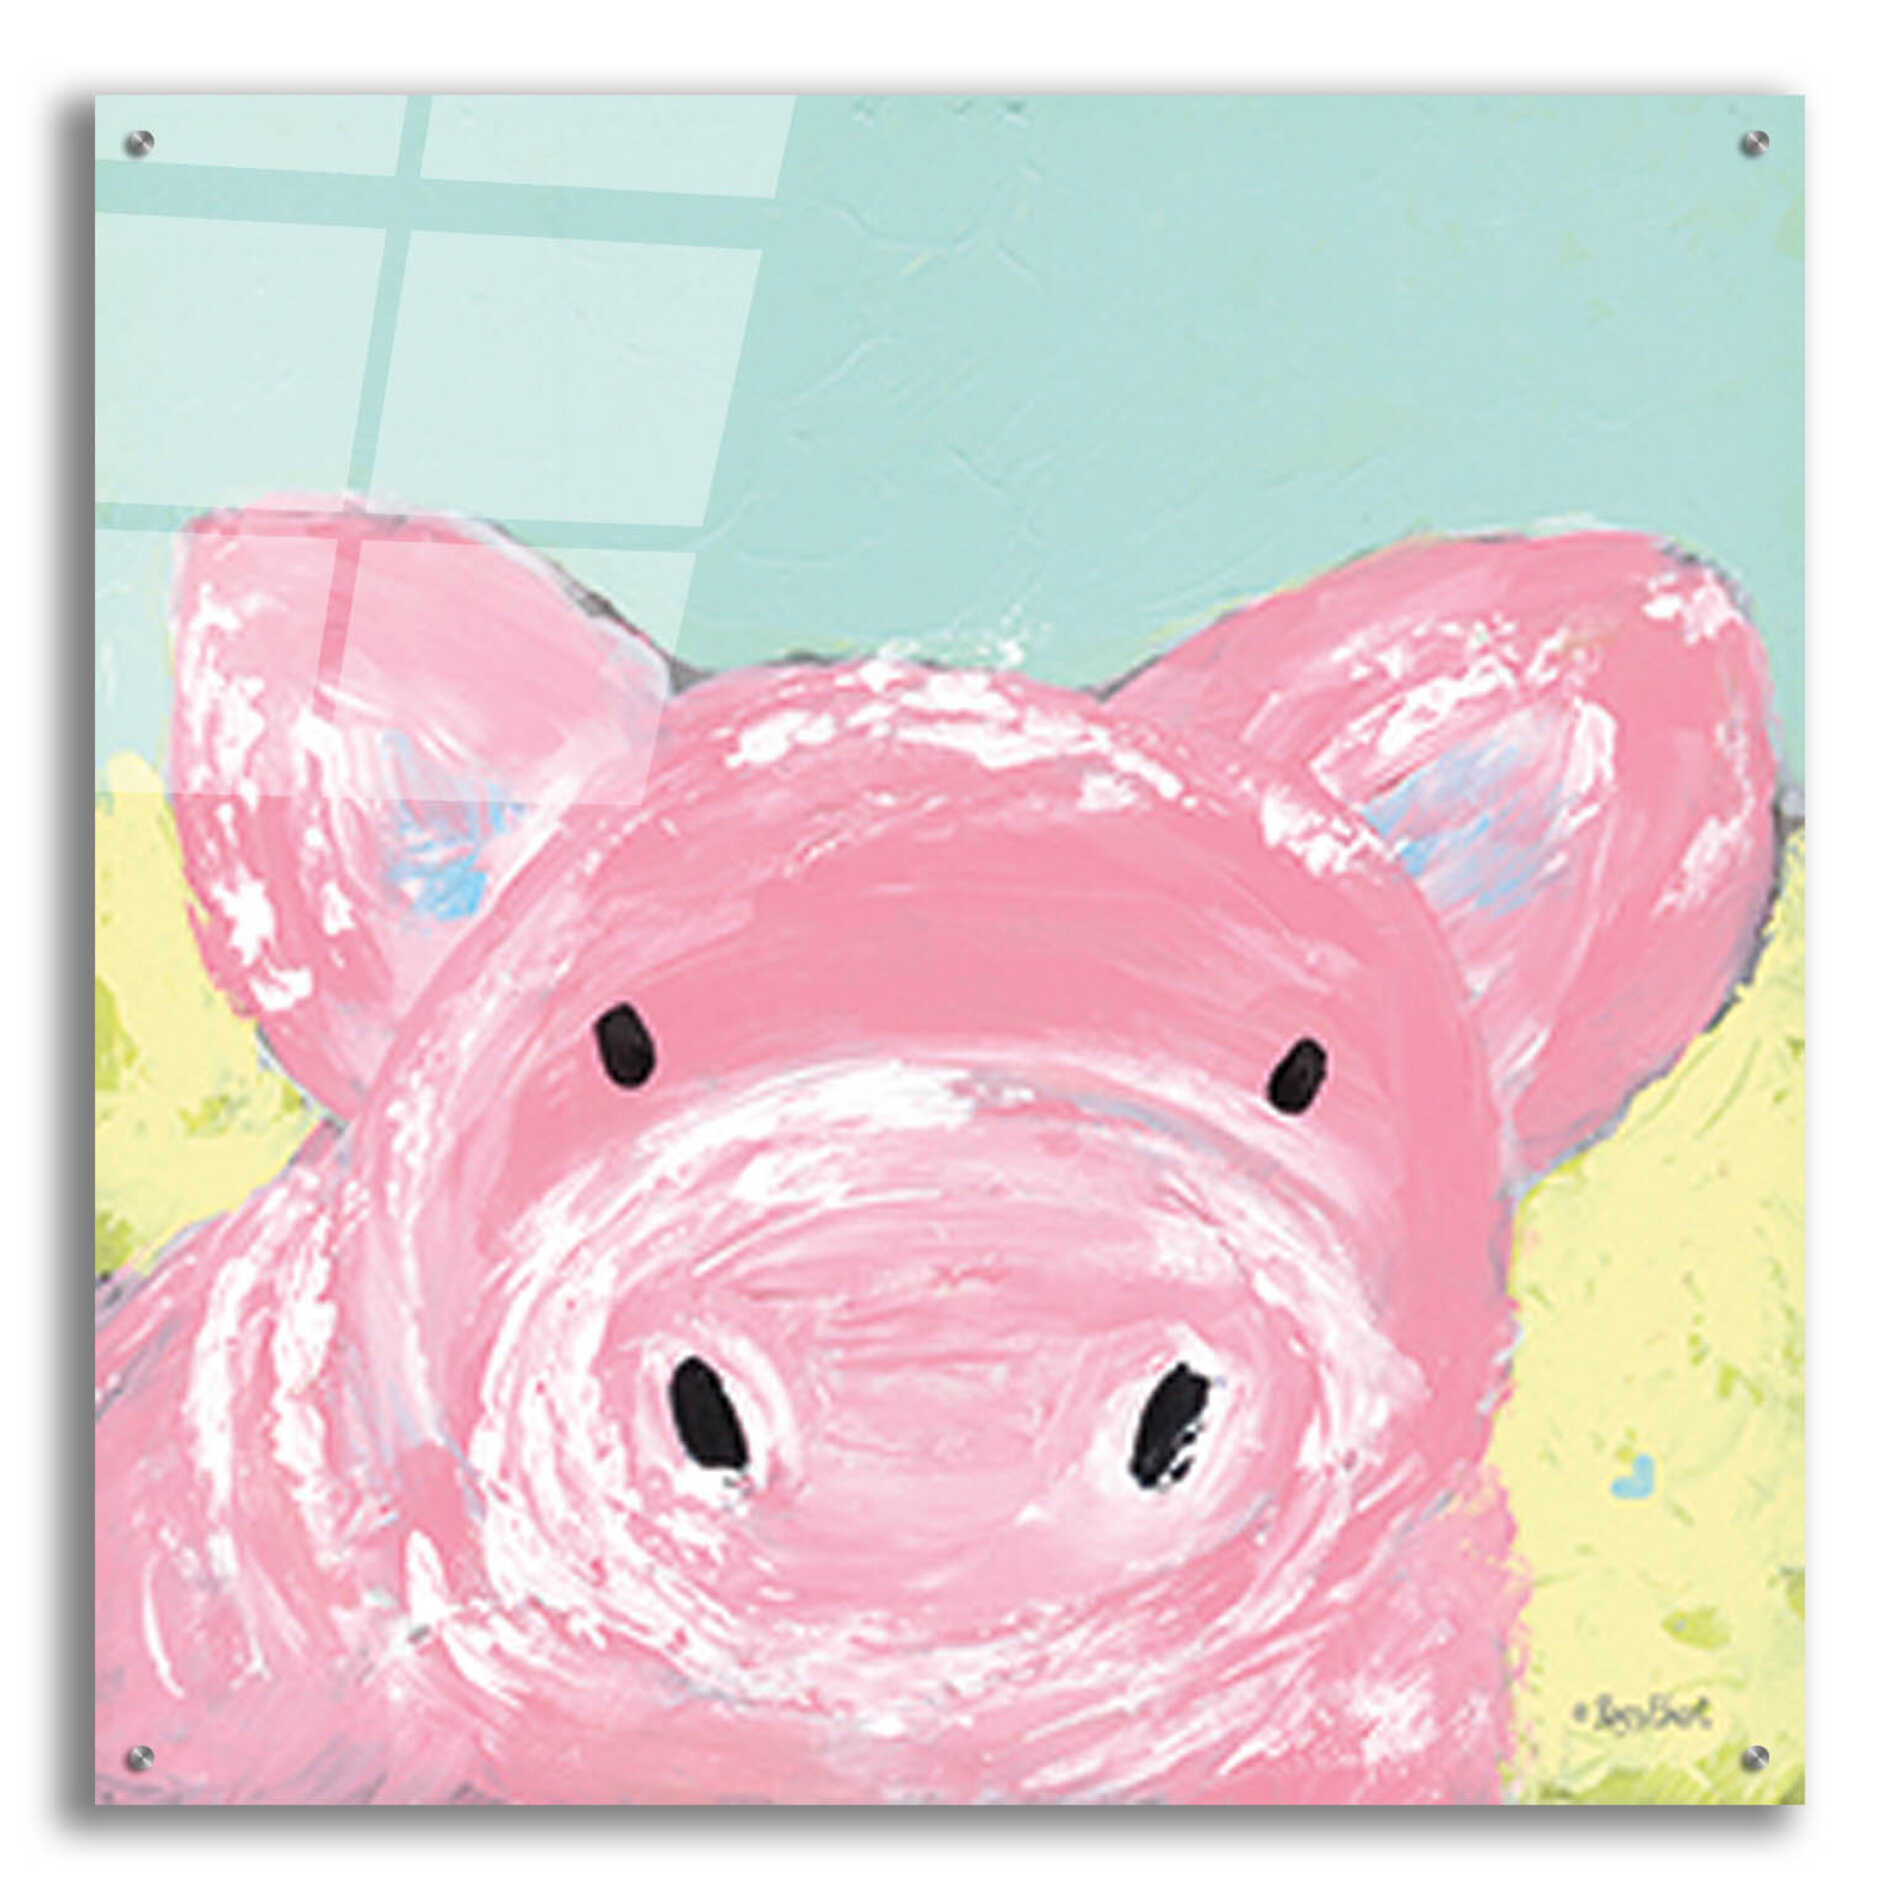 Epic Art 'Oink' by Roey Ebert, Acrylic Glass Wall Art,36x36